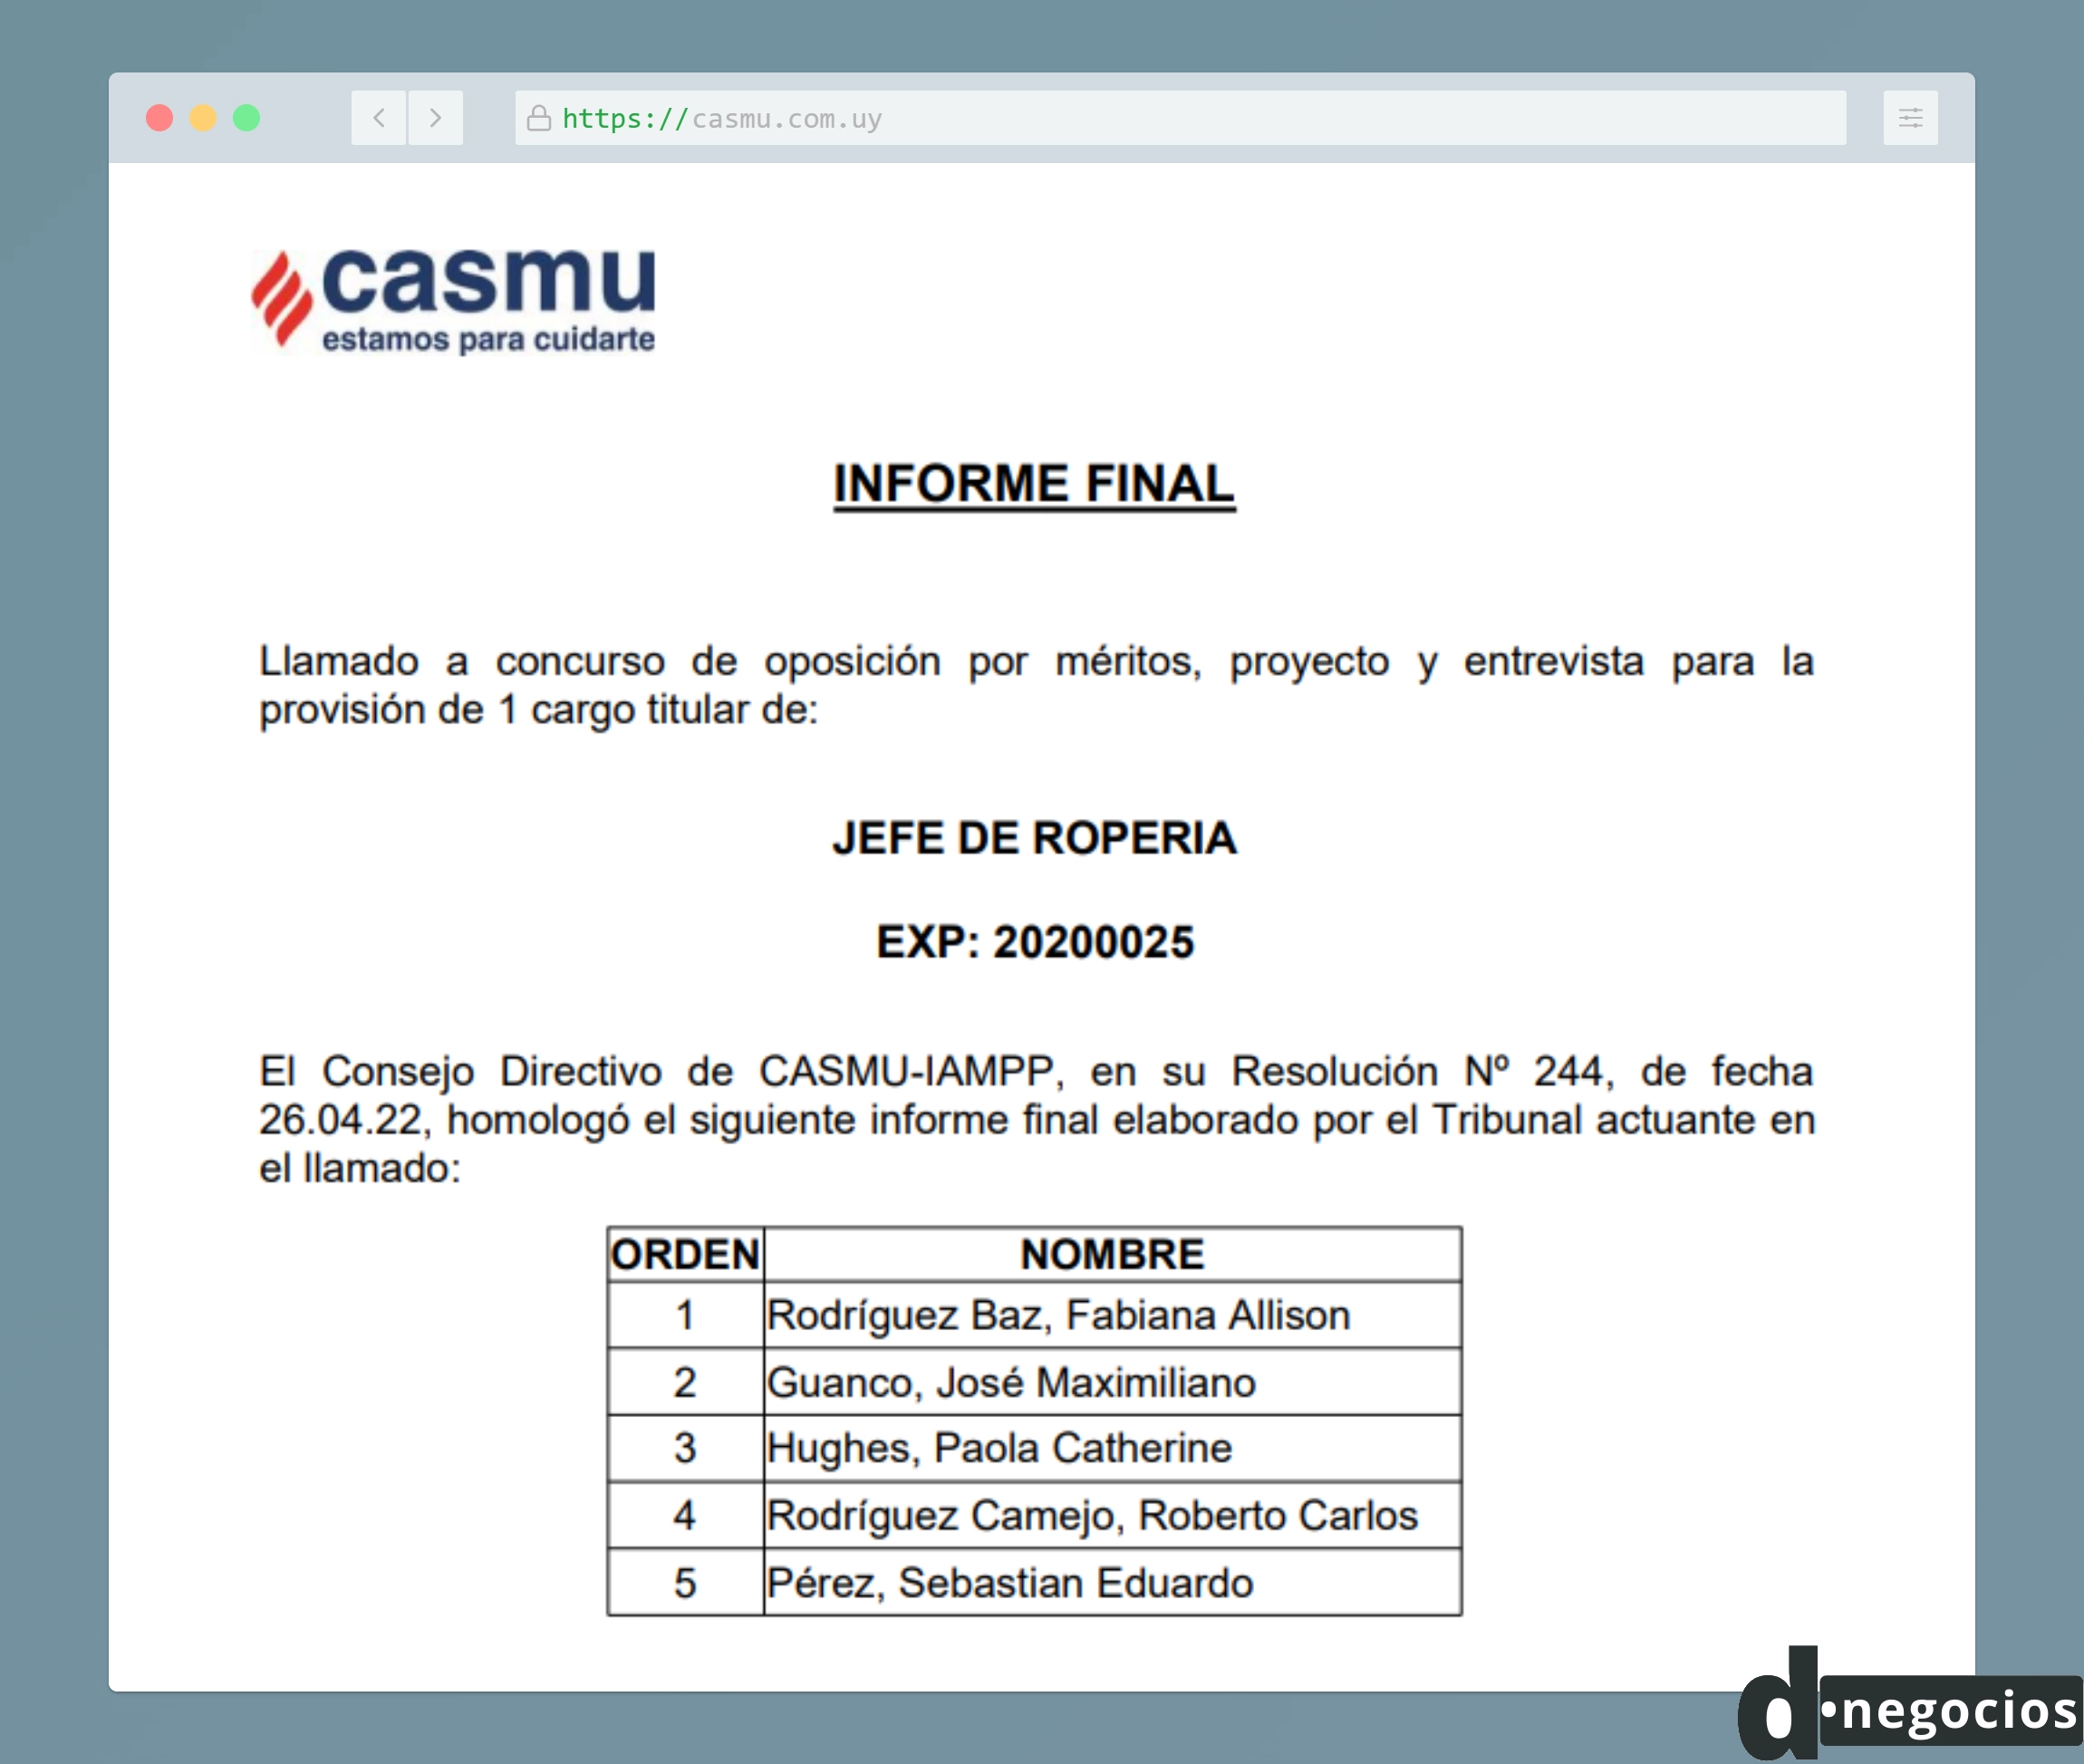 Documento detallando un llamado del CASMU.